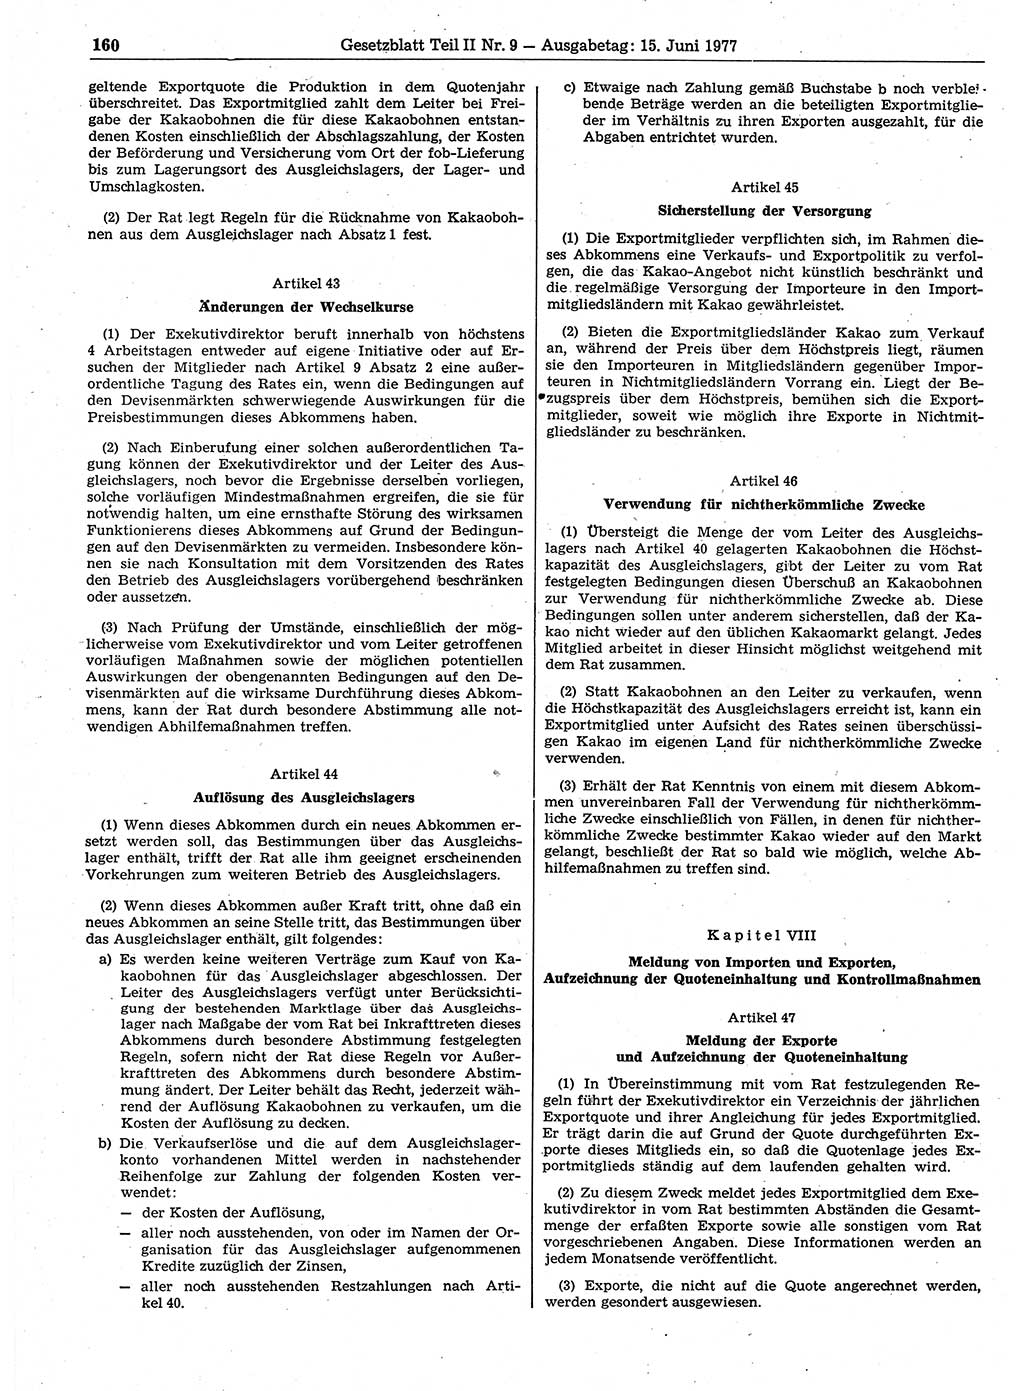 Gesetzblatt (GBl.) der Deutschen Demokratischen Republik (DDR) Teil ⅠⅠ 1977, Seite 160 (GBl. DDR ⅠⅠ 1977, S. 160)